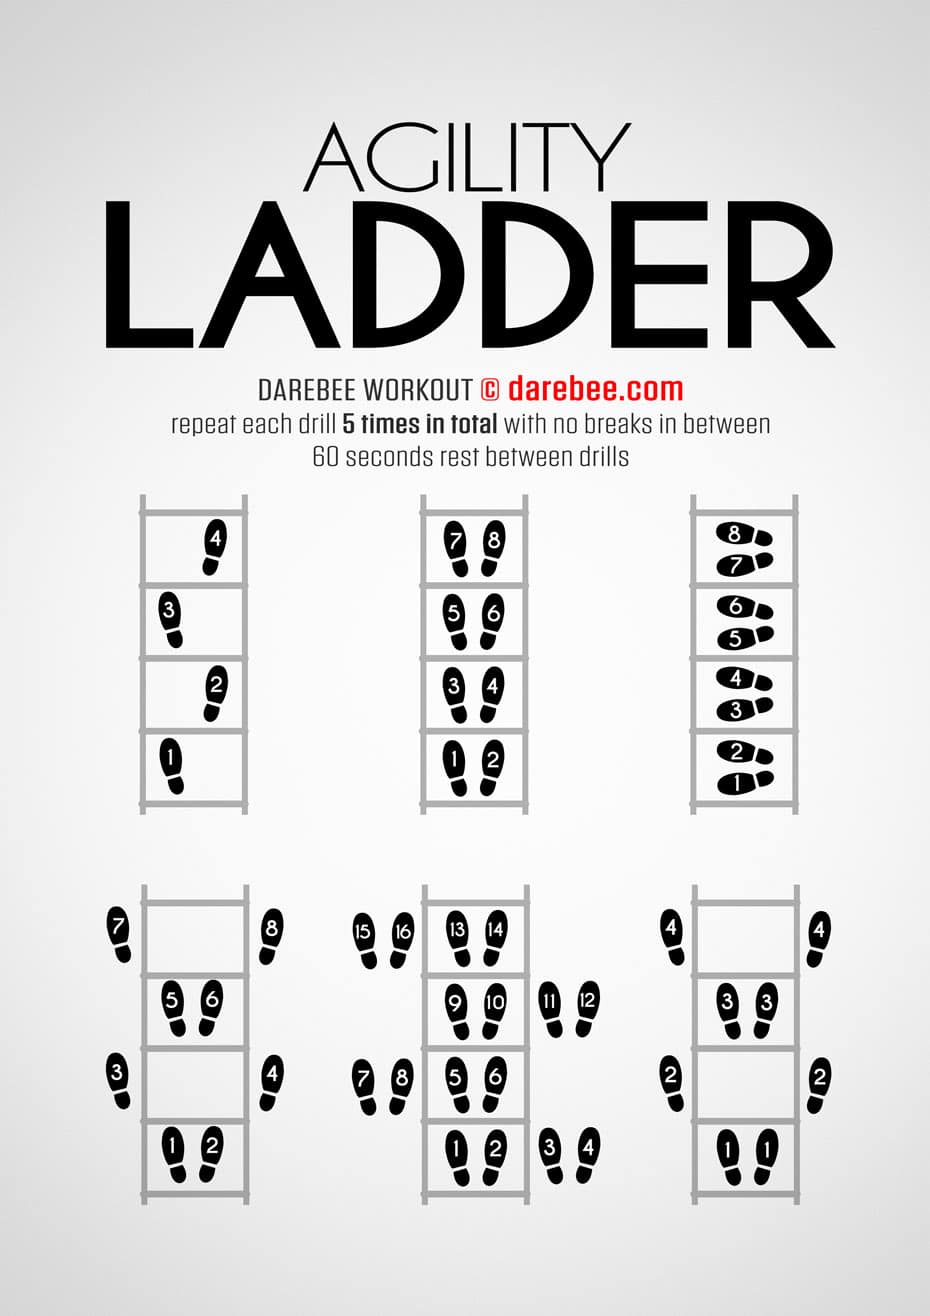 Bildquelle: Darebee.com // Agility Ladder - Agilitätsleiter: Die effektivsten Fitnessgeräte platzsparend für zuhause und unterwegs auf Reisen, um Muskeln aufzubauen (Muskelaufbau) Fett abzubauen an Bauch, Beine und Po